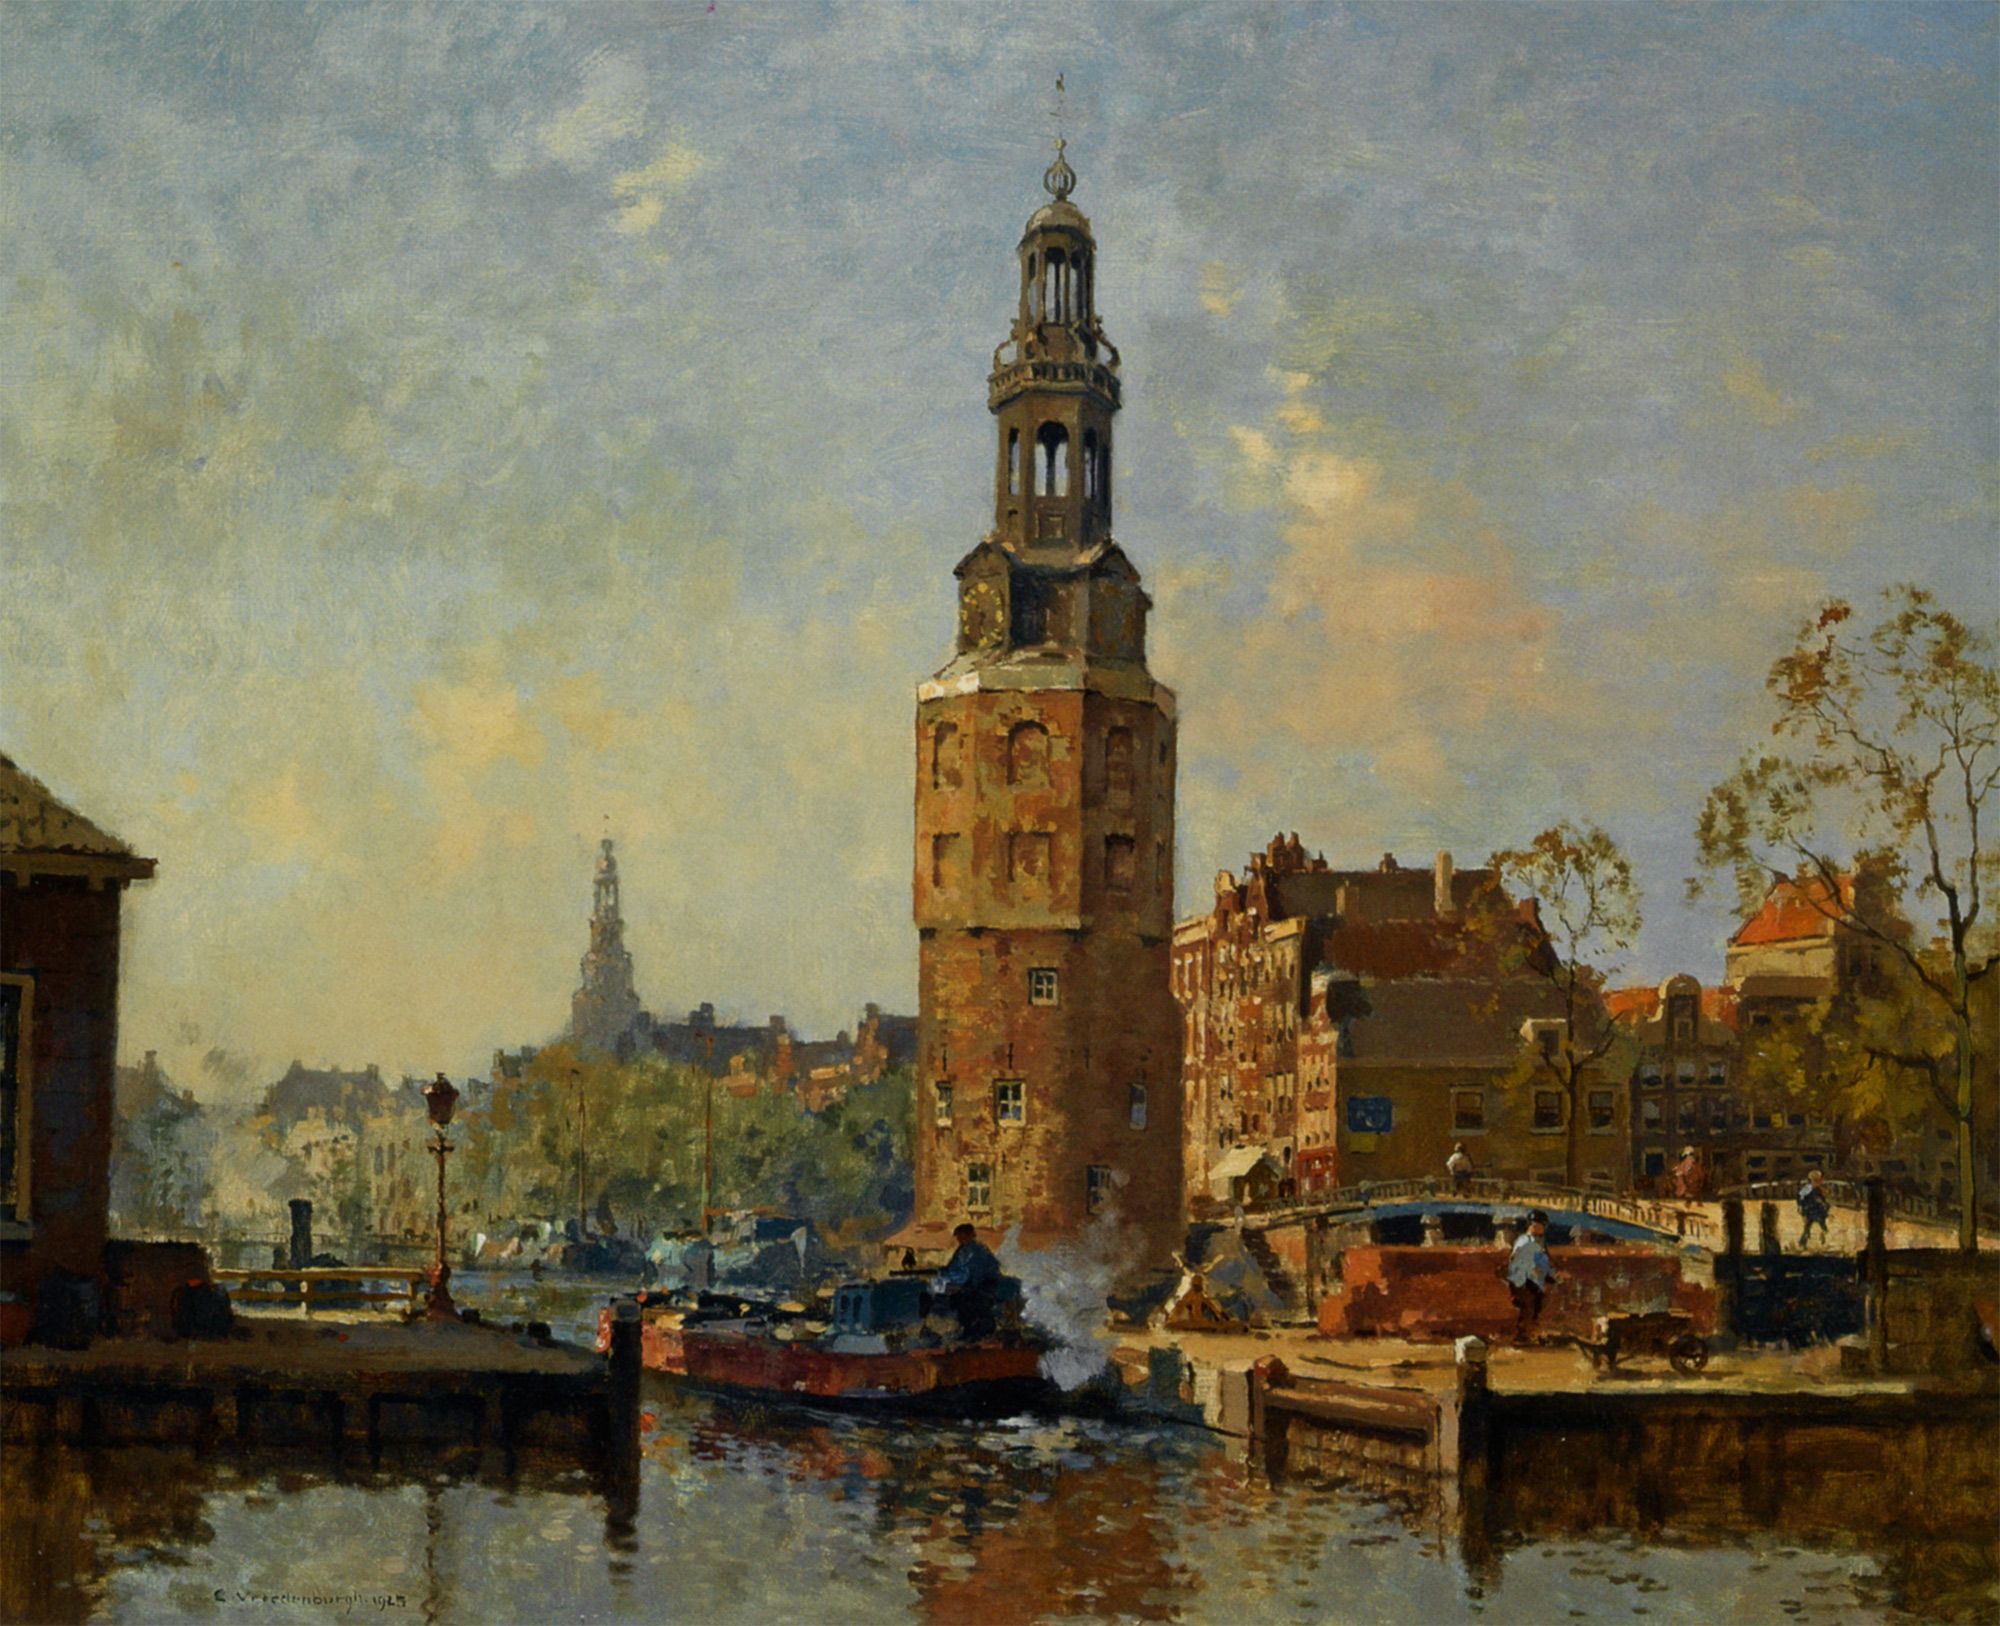 A view of the Montelbaanstoren Amsterdam by Cornelis Vreedenburgh